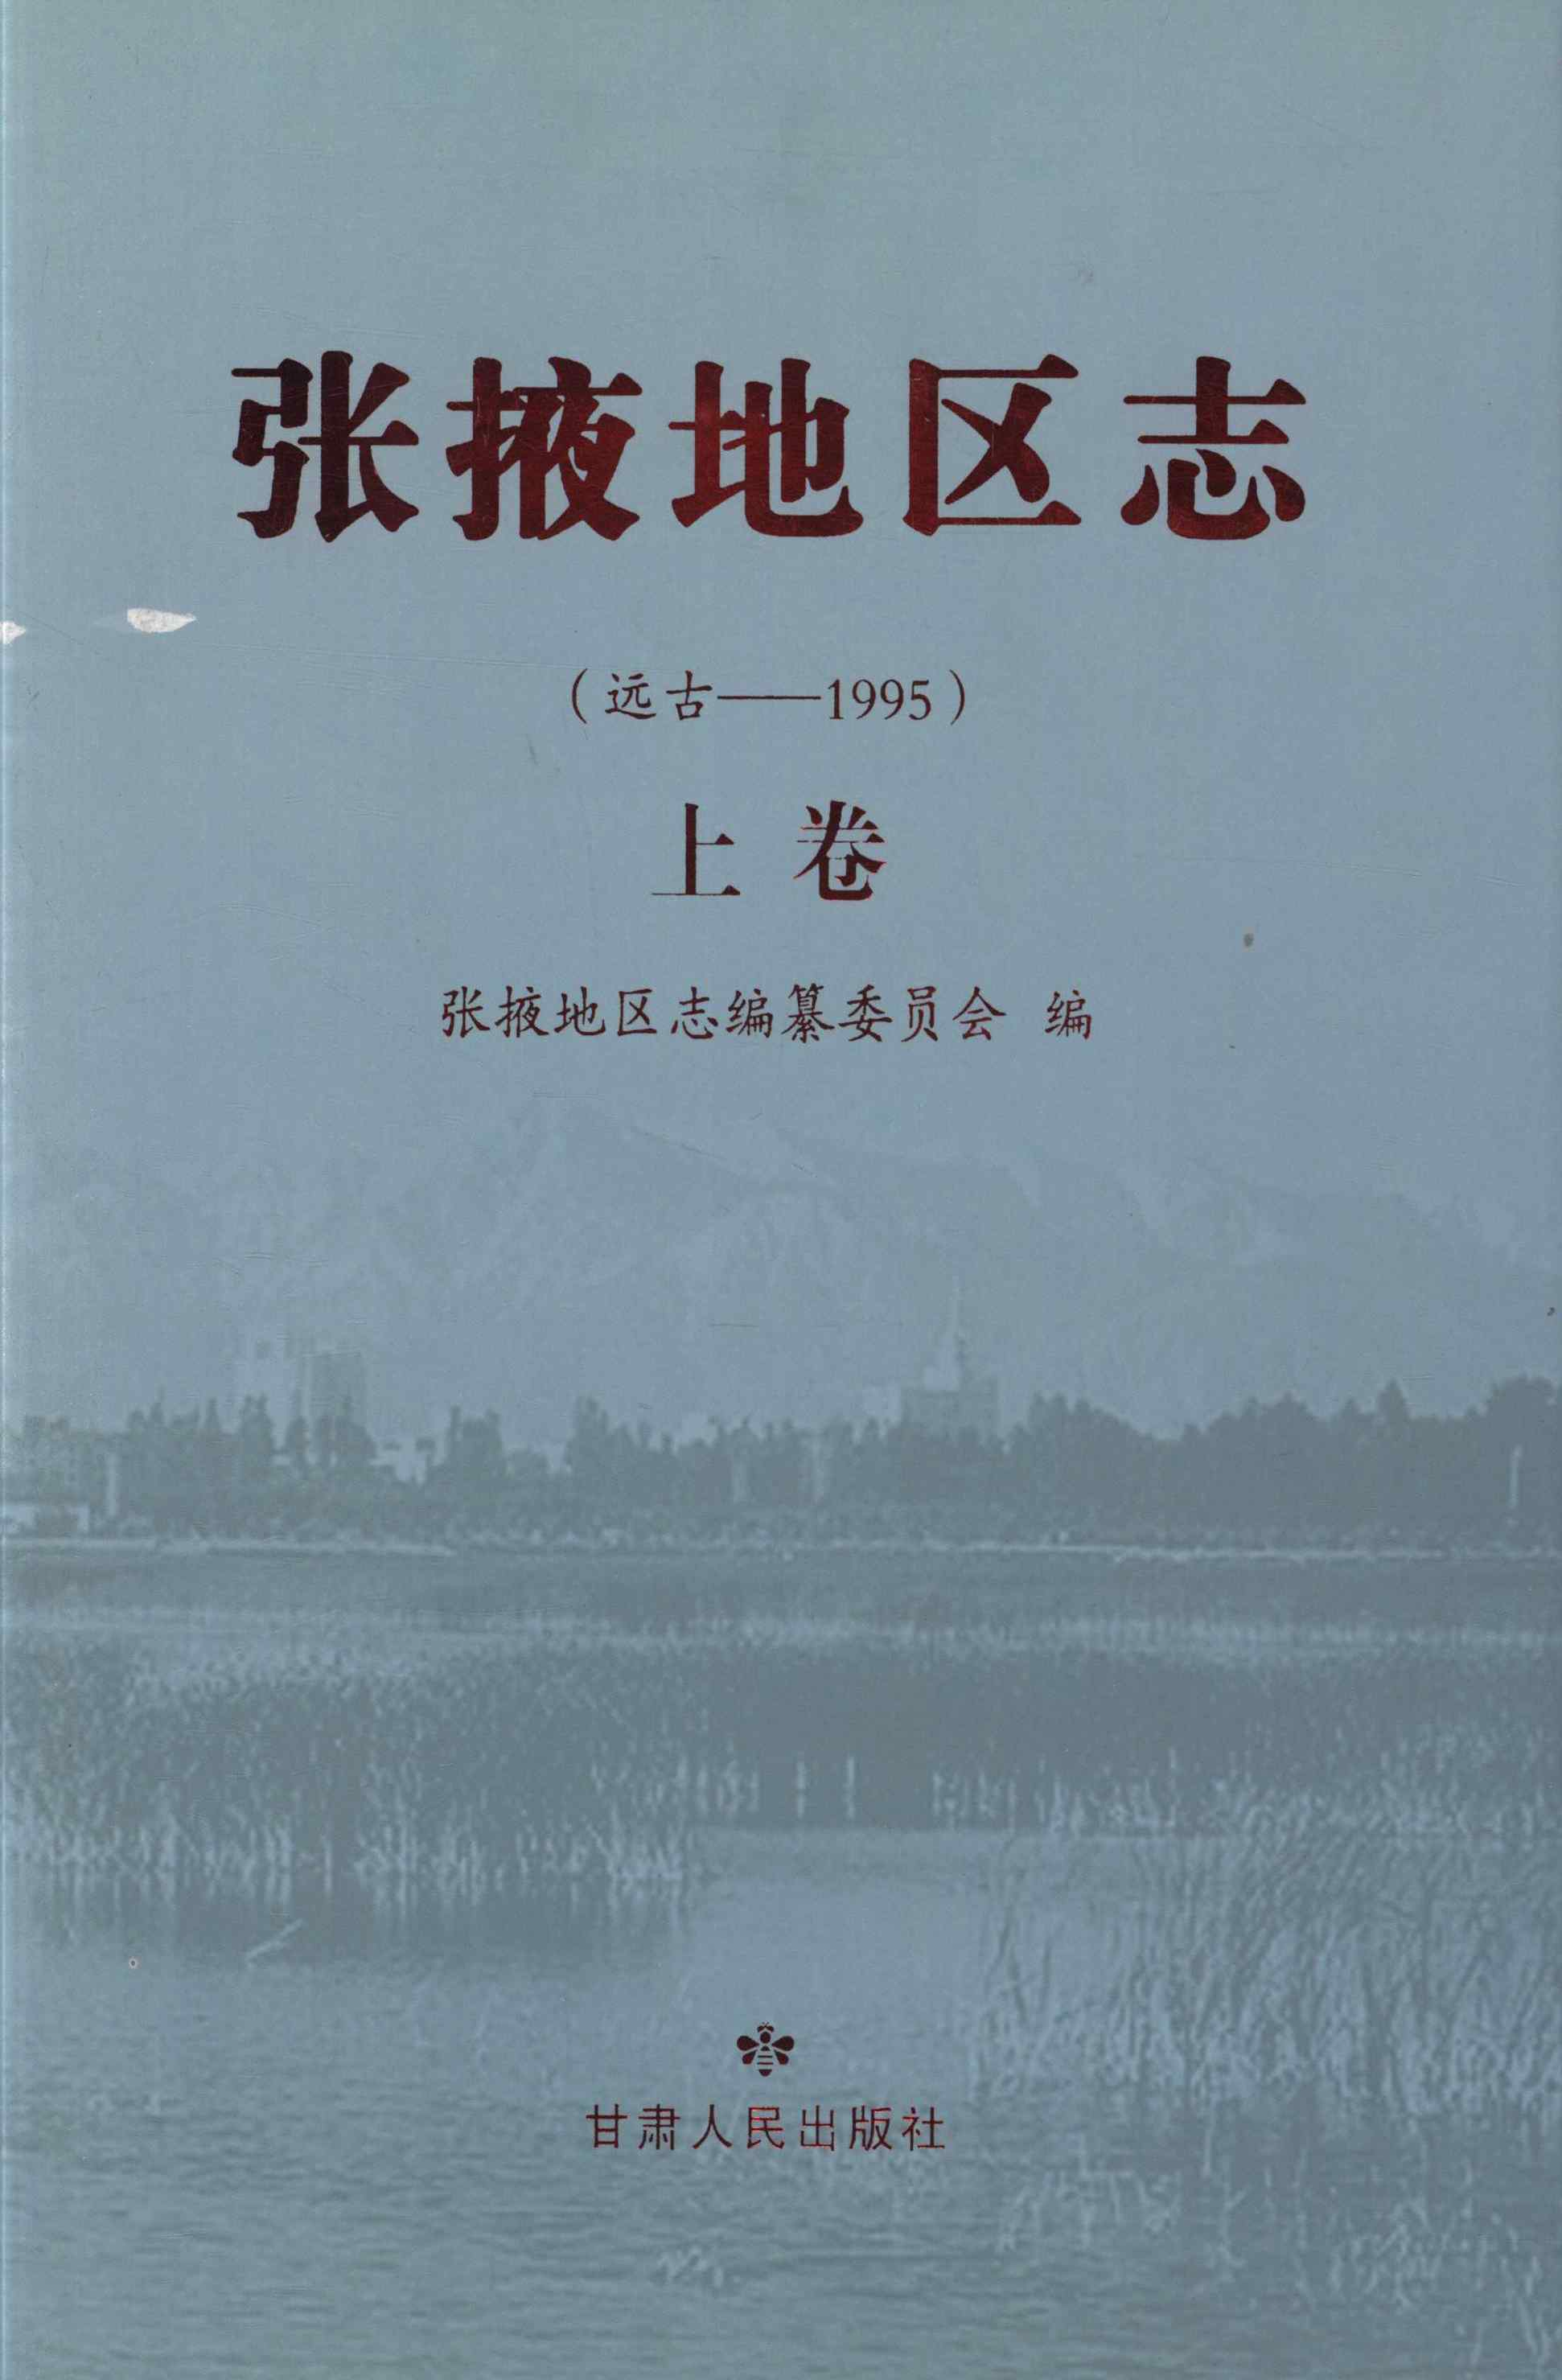 张掖地区志 远古——1995 上卷